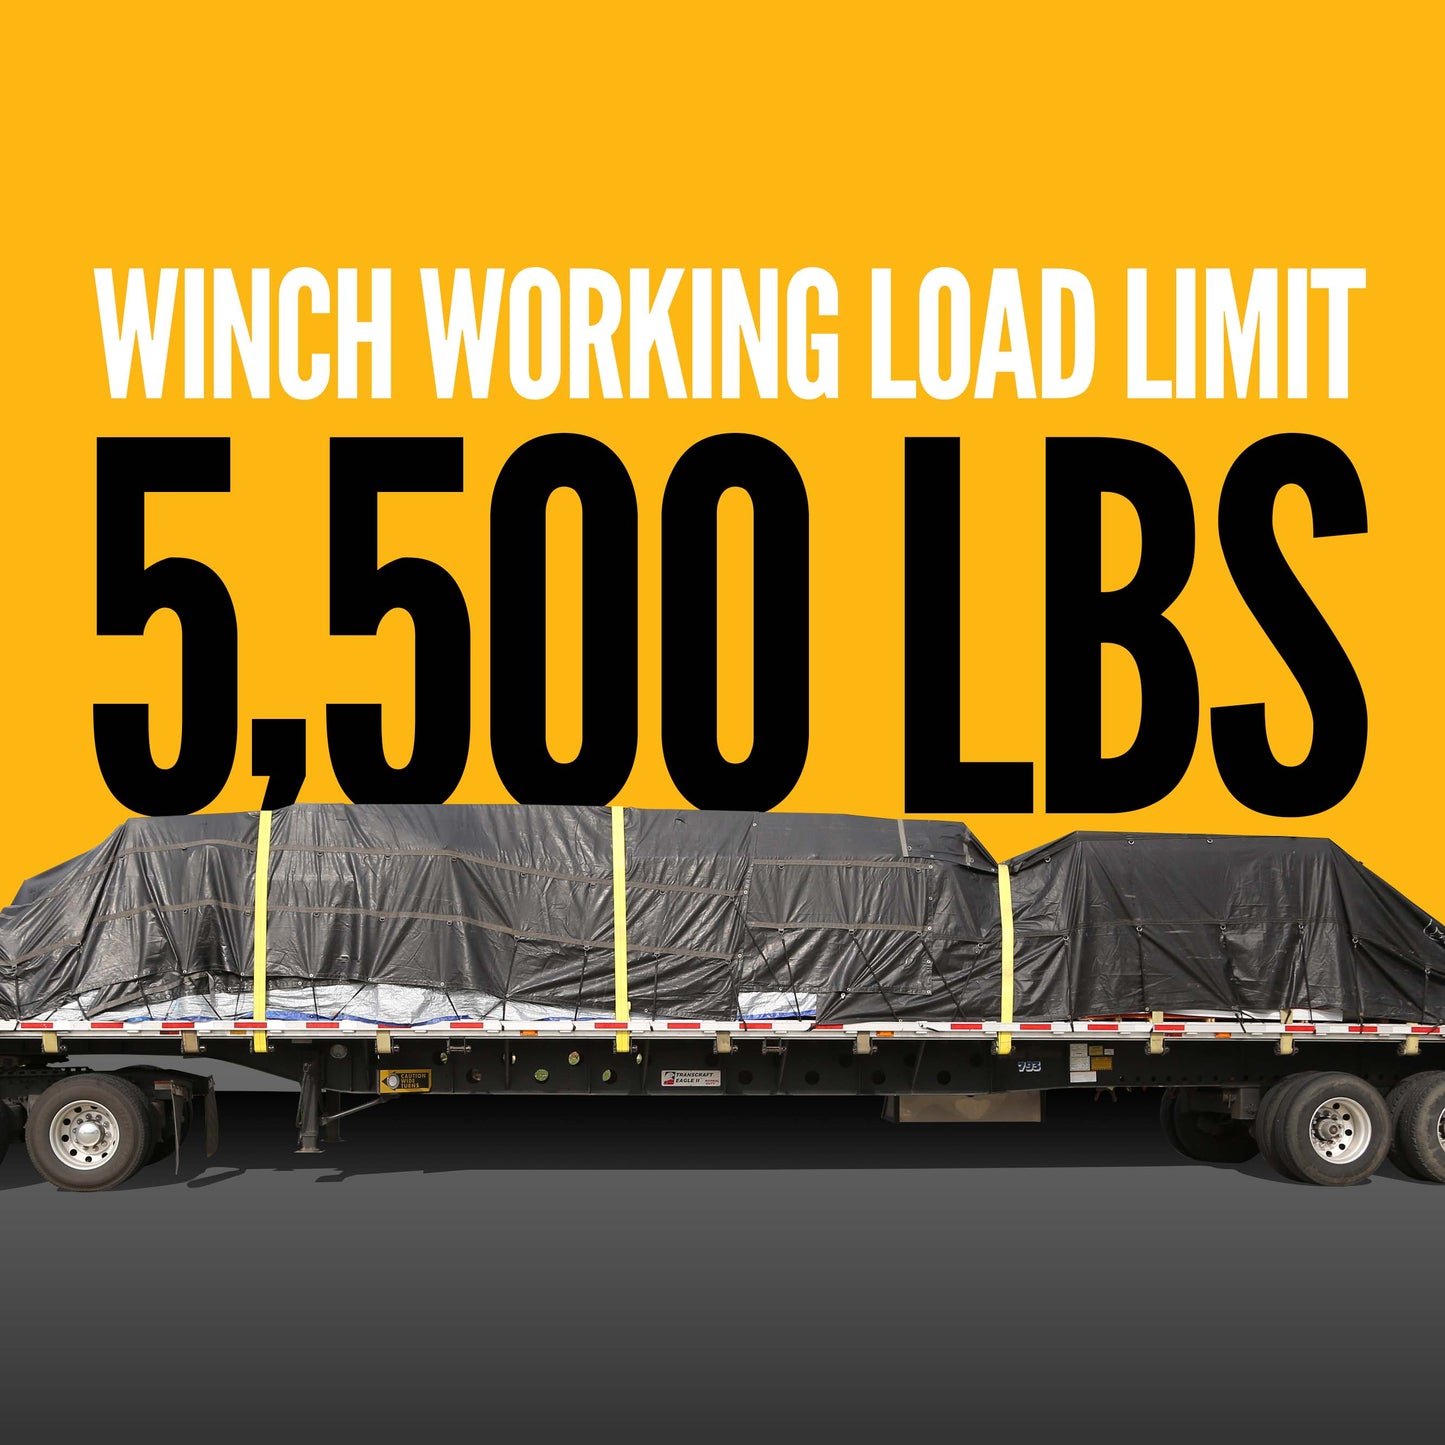 4" Low Profile Weld-On Truck Tie Down Winch (Side Mount)